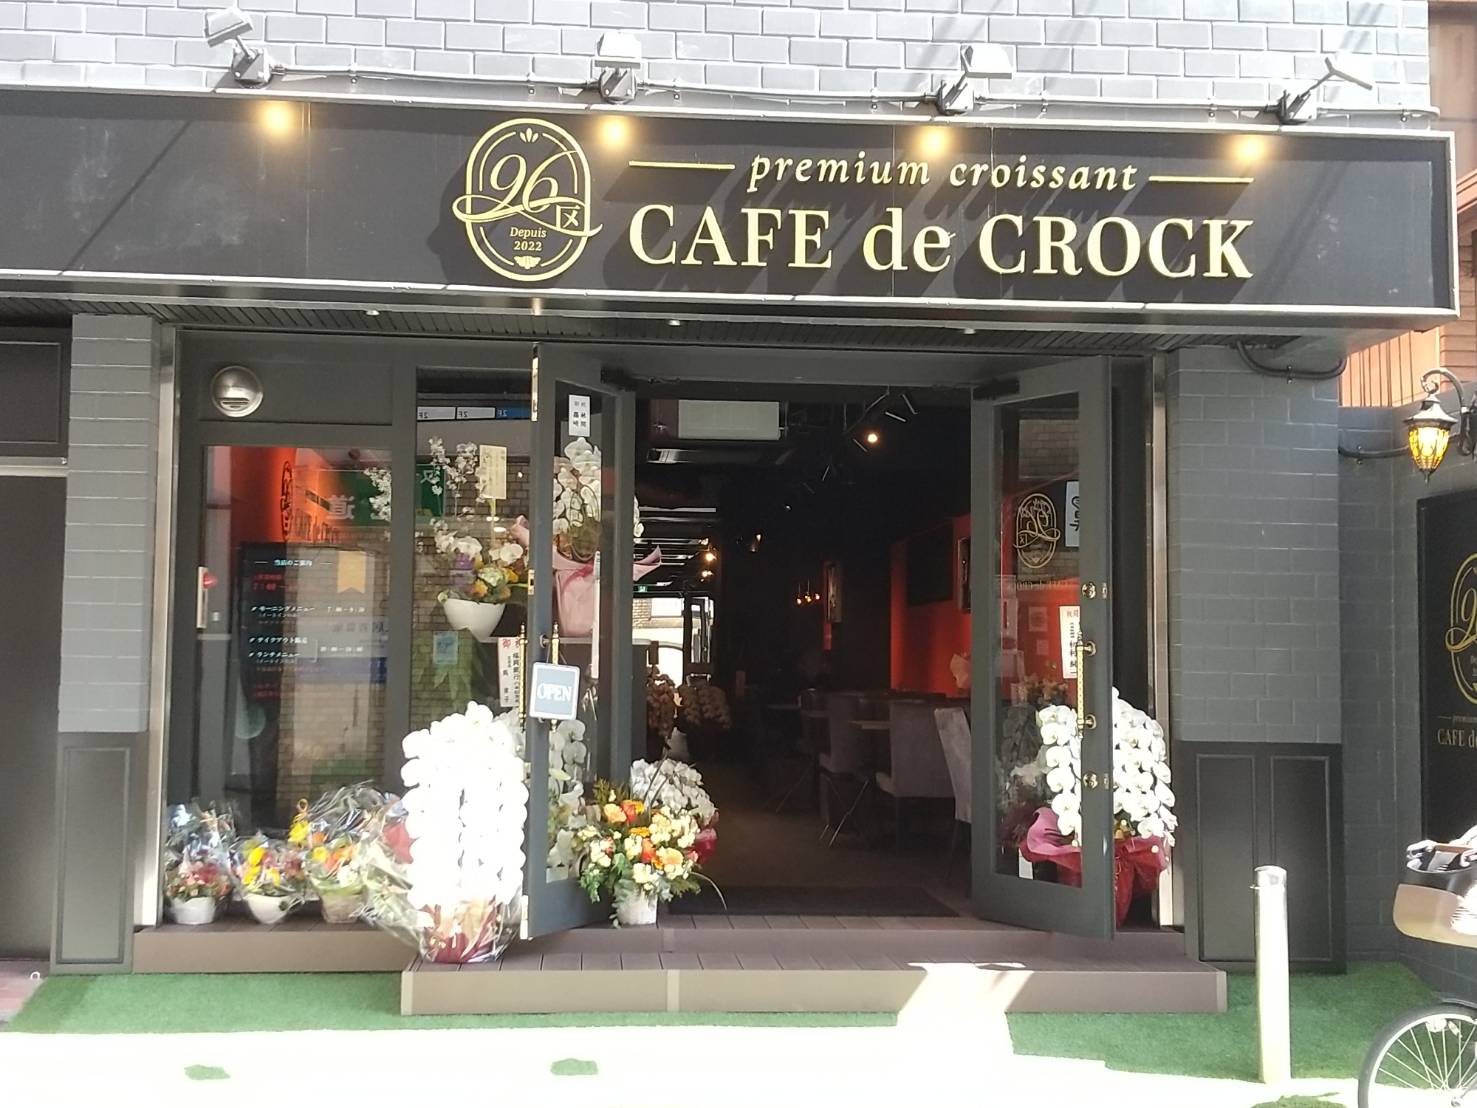 2022年3月14日にオープン★プレミアムクロワッサン専門店『CAFE de CROCK』